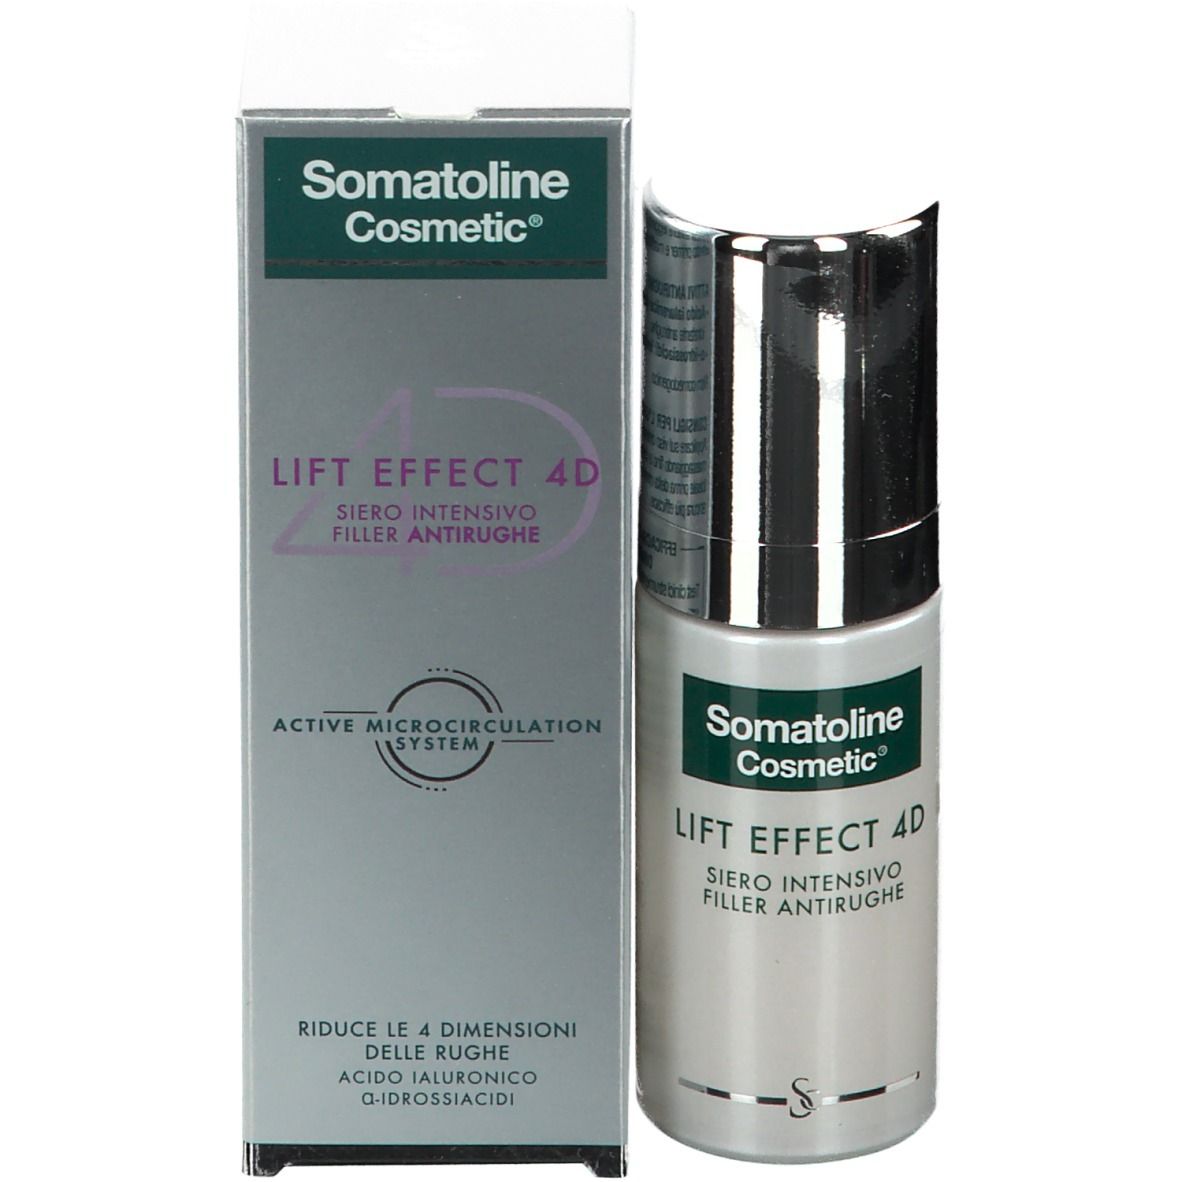 Somatoline Cosmetic® LIFT EFFECT 4D Siero Intensivo Filler Antirughe